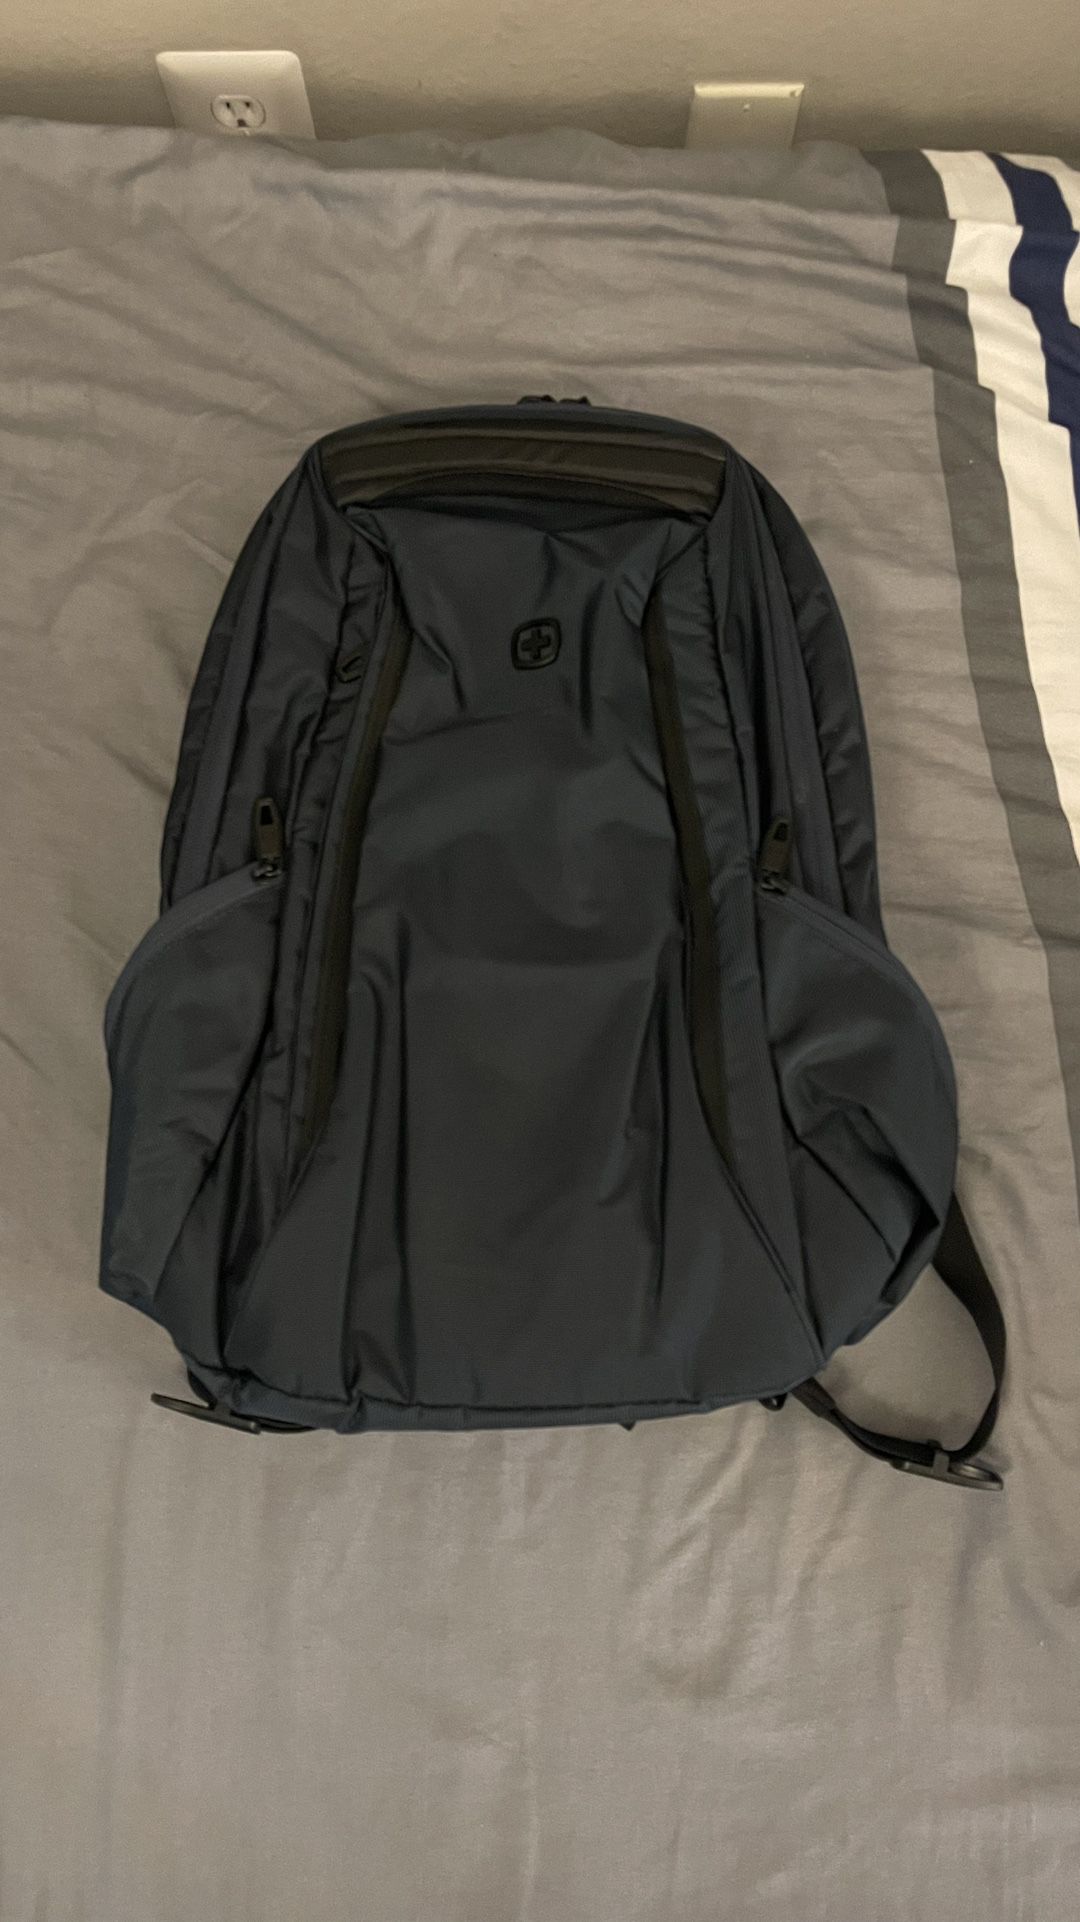 Swiss gear backpack waterproof